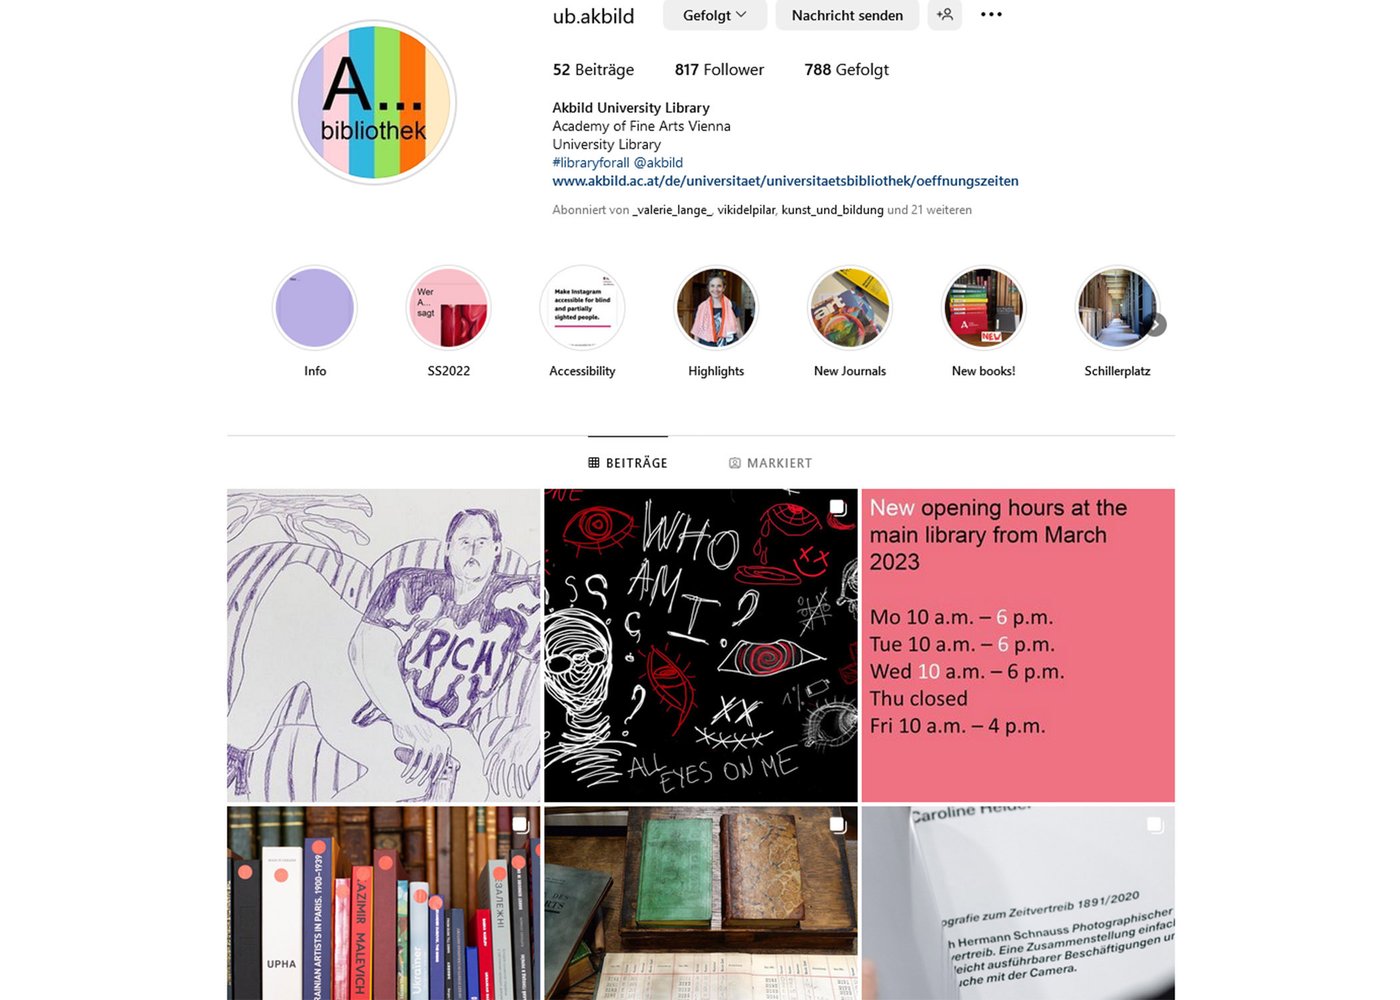 Ansicht der Instagram-Seite der Universitätsbibliothek der Akademie der bildenden Künste Wien mit den Rubriken Info, SS2022, Accessibility, Highlights, New Journals, New books!, Schillerplatz sowie den Abbildungen zu einigen Beiträgen.